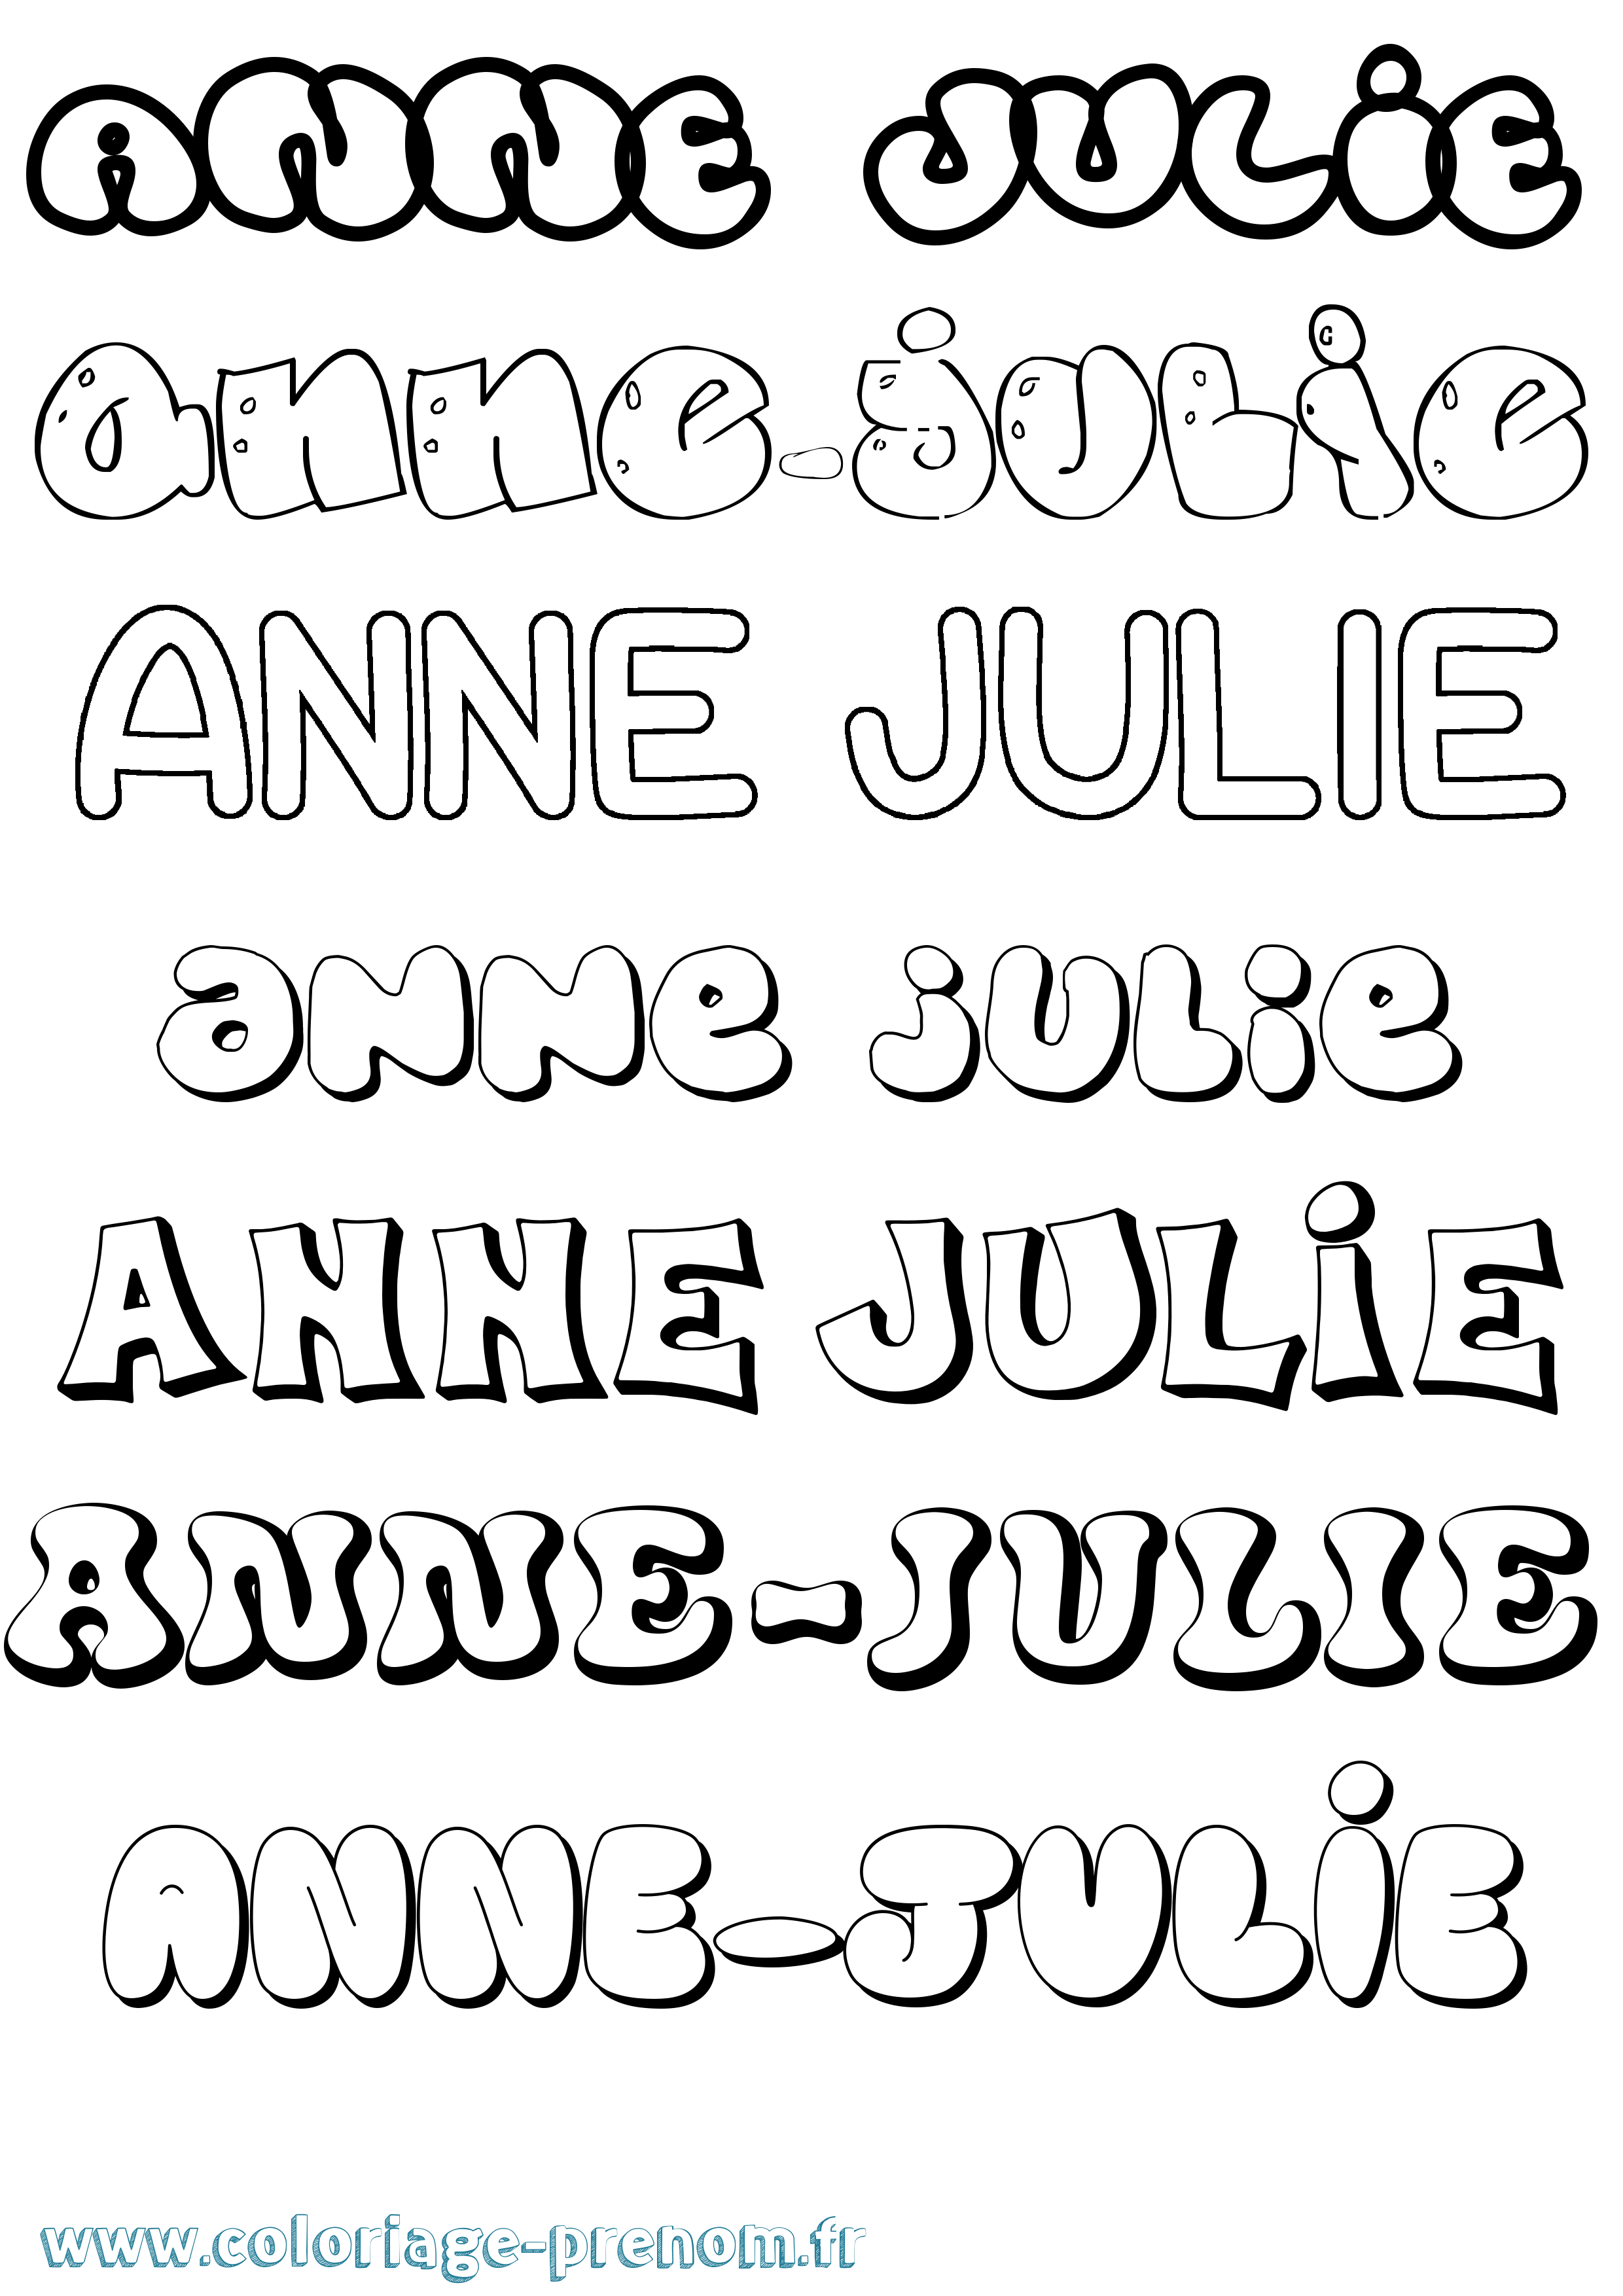 Coloriage prénom Anne-Julie Bubble